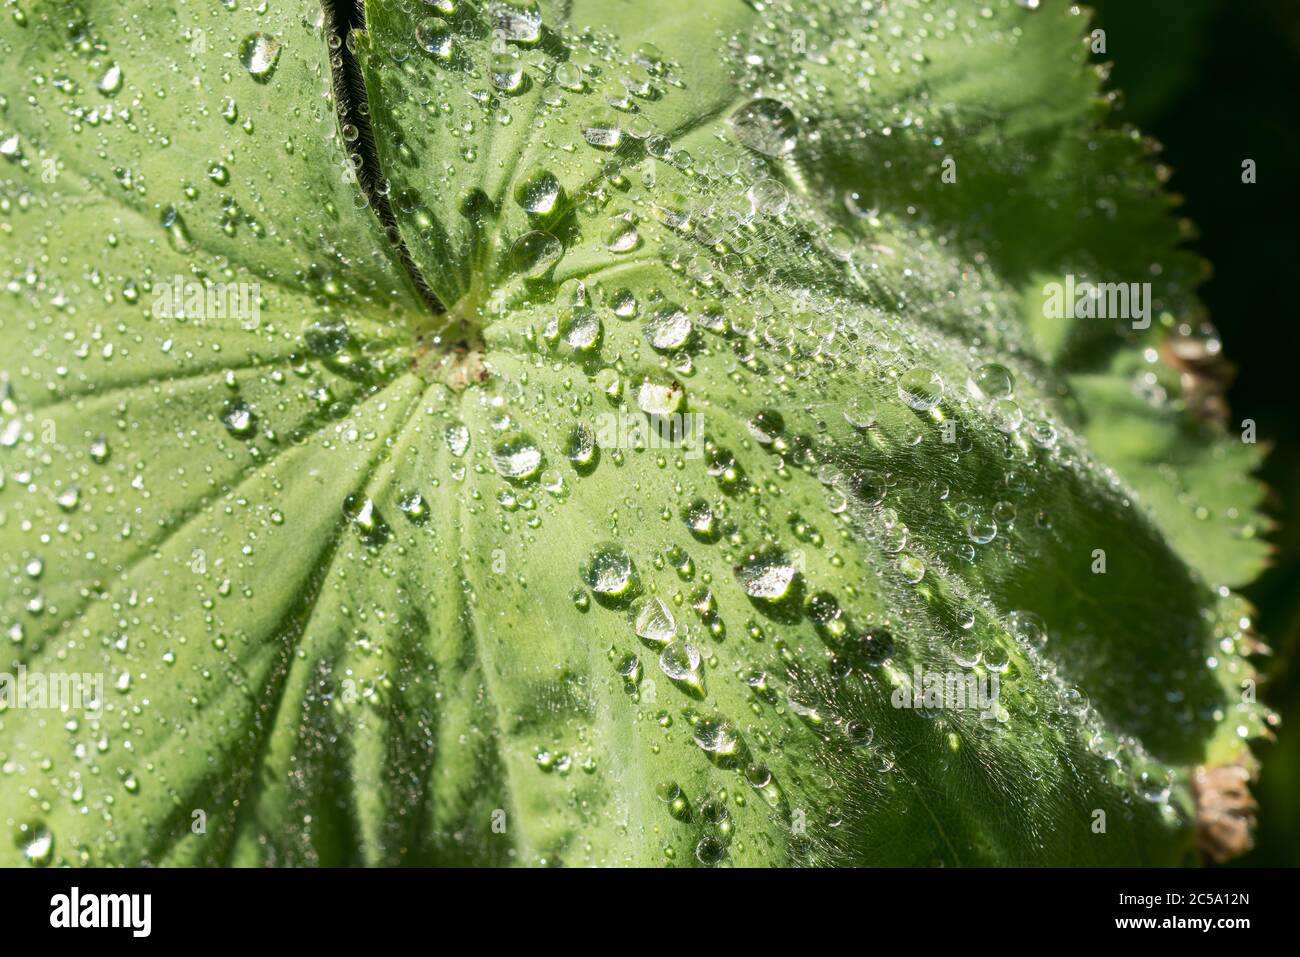 Les poils fins de feuilles hydrophile recouvrant les ladys Mantel font des gouttelettes d'eau qui s'y accrochent après la pluie en raison des propriétés hydrophobes Banque D'Images